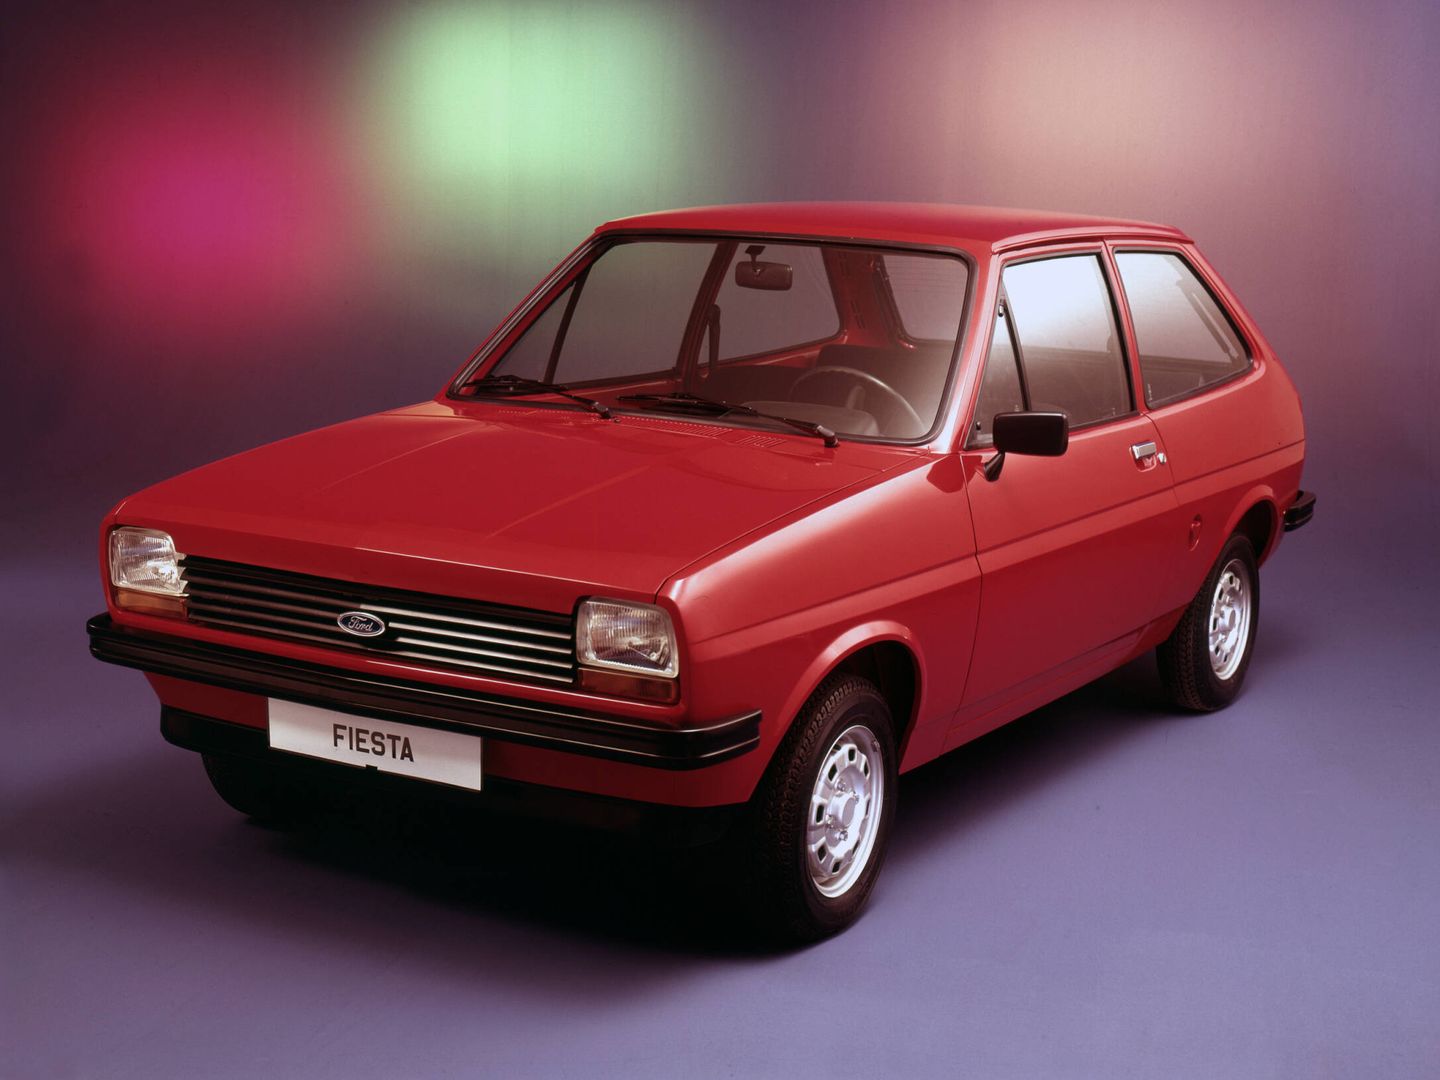 El primer Ford Fiesta, lanzado en 1976, ofrecía dos motores de 957 cc, con 40 y 45 CV.